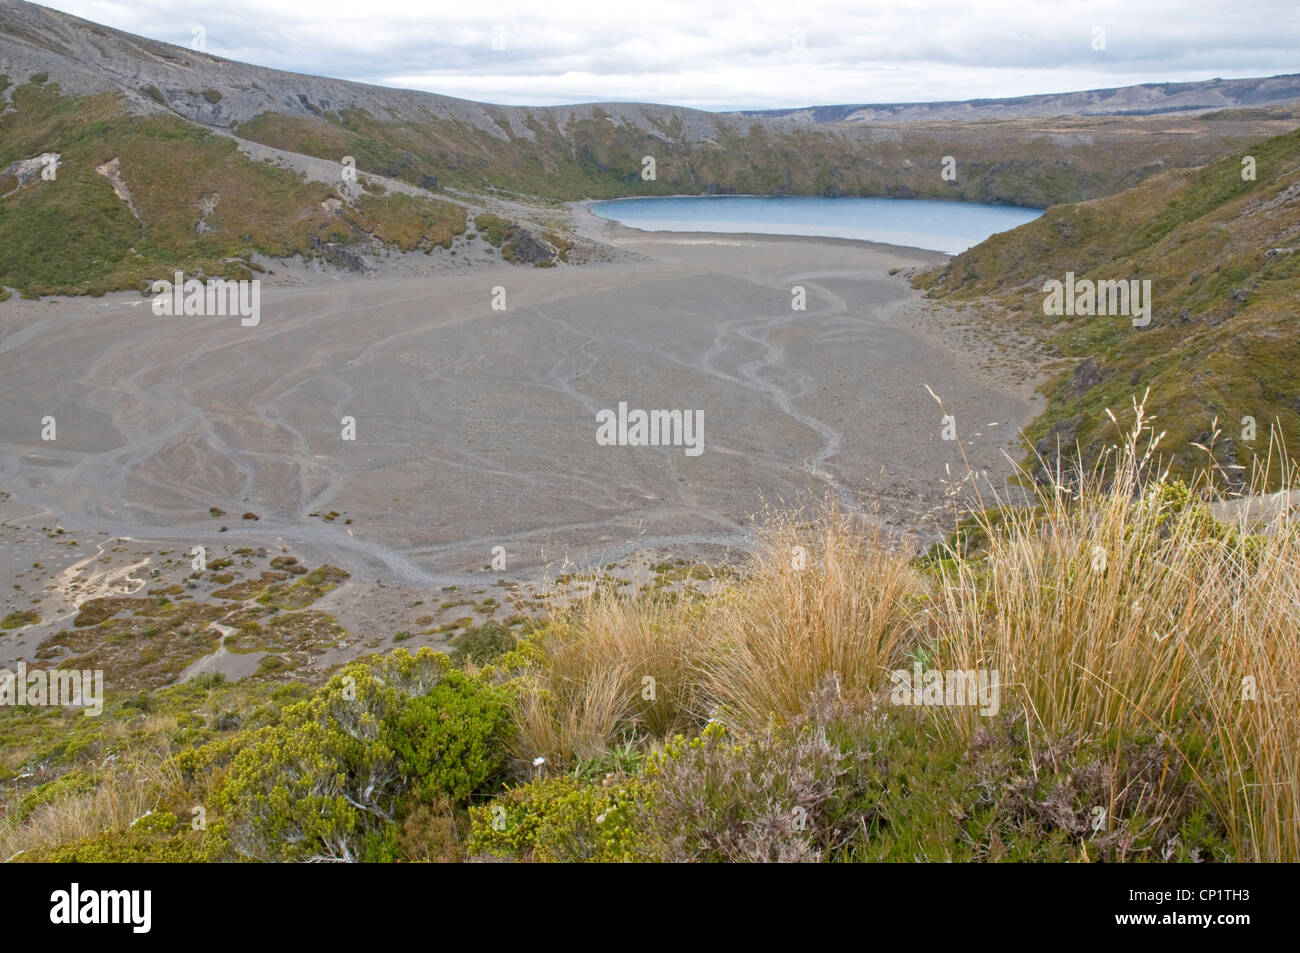 The Lower Tama Lake in Tongariro National Park, New Zealand Stock Photo